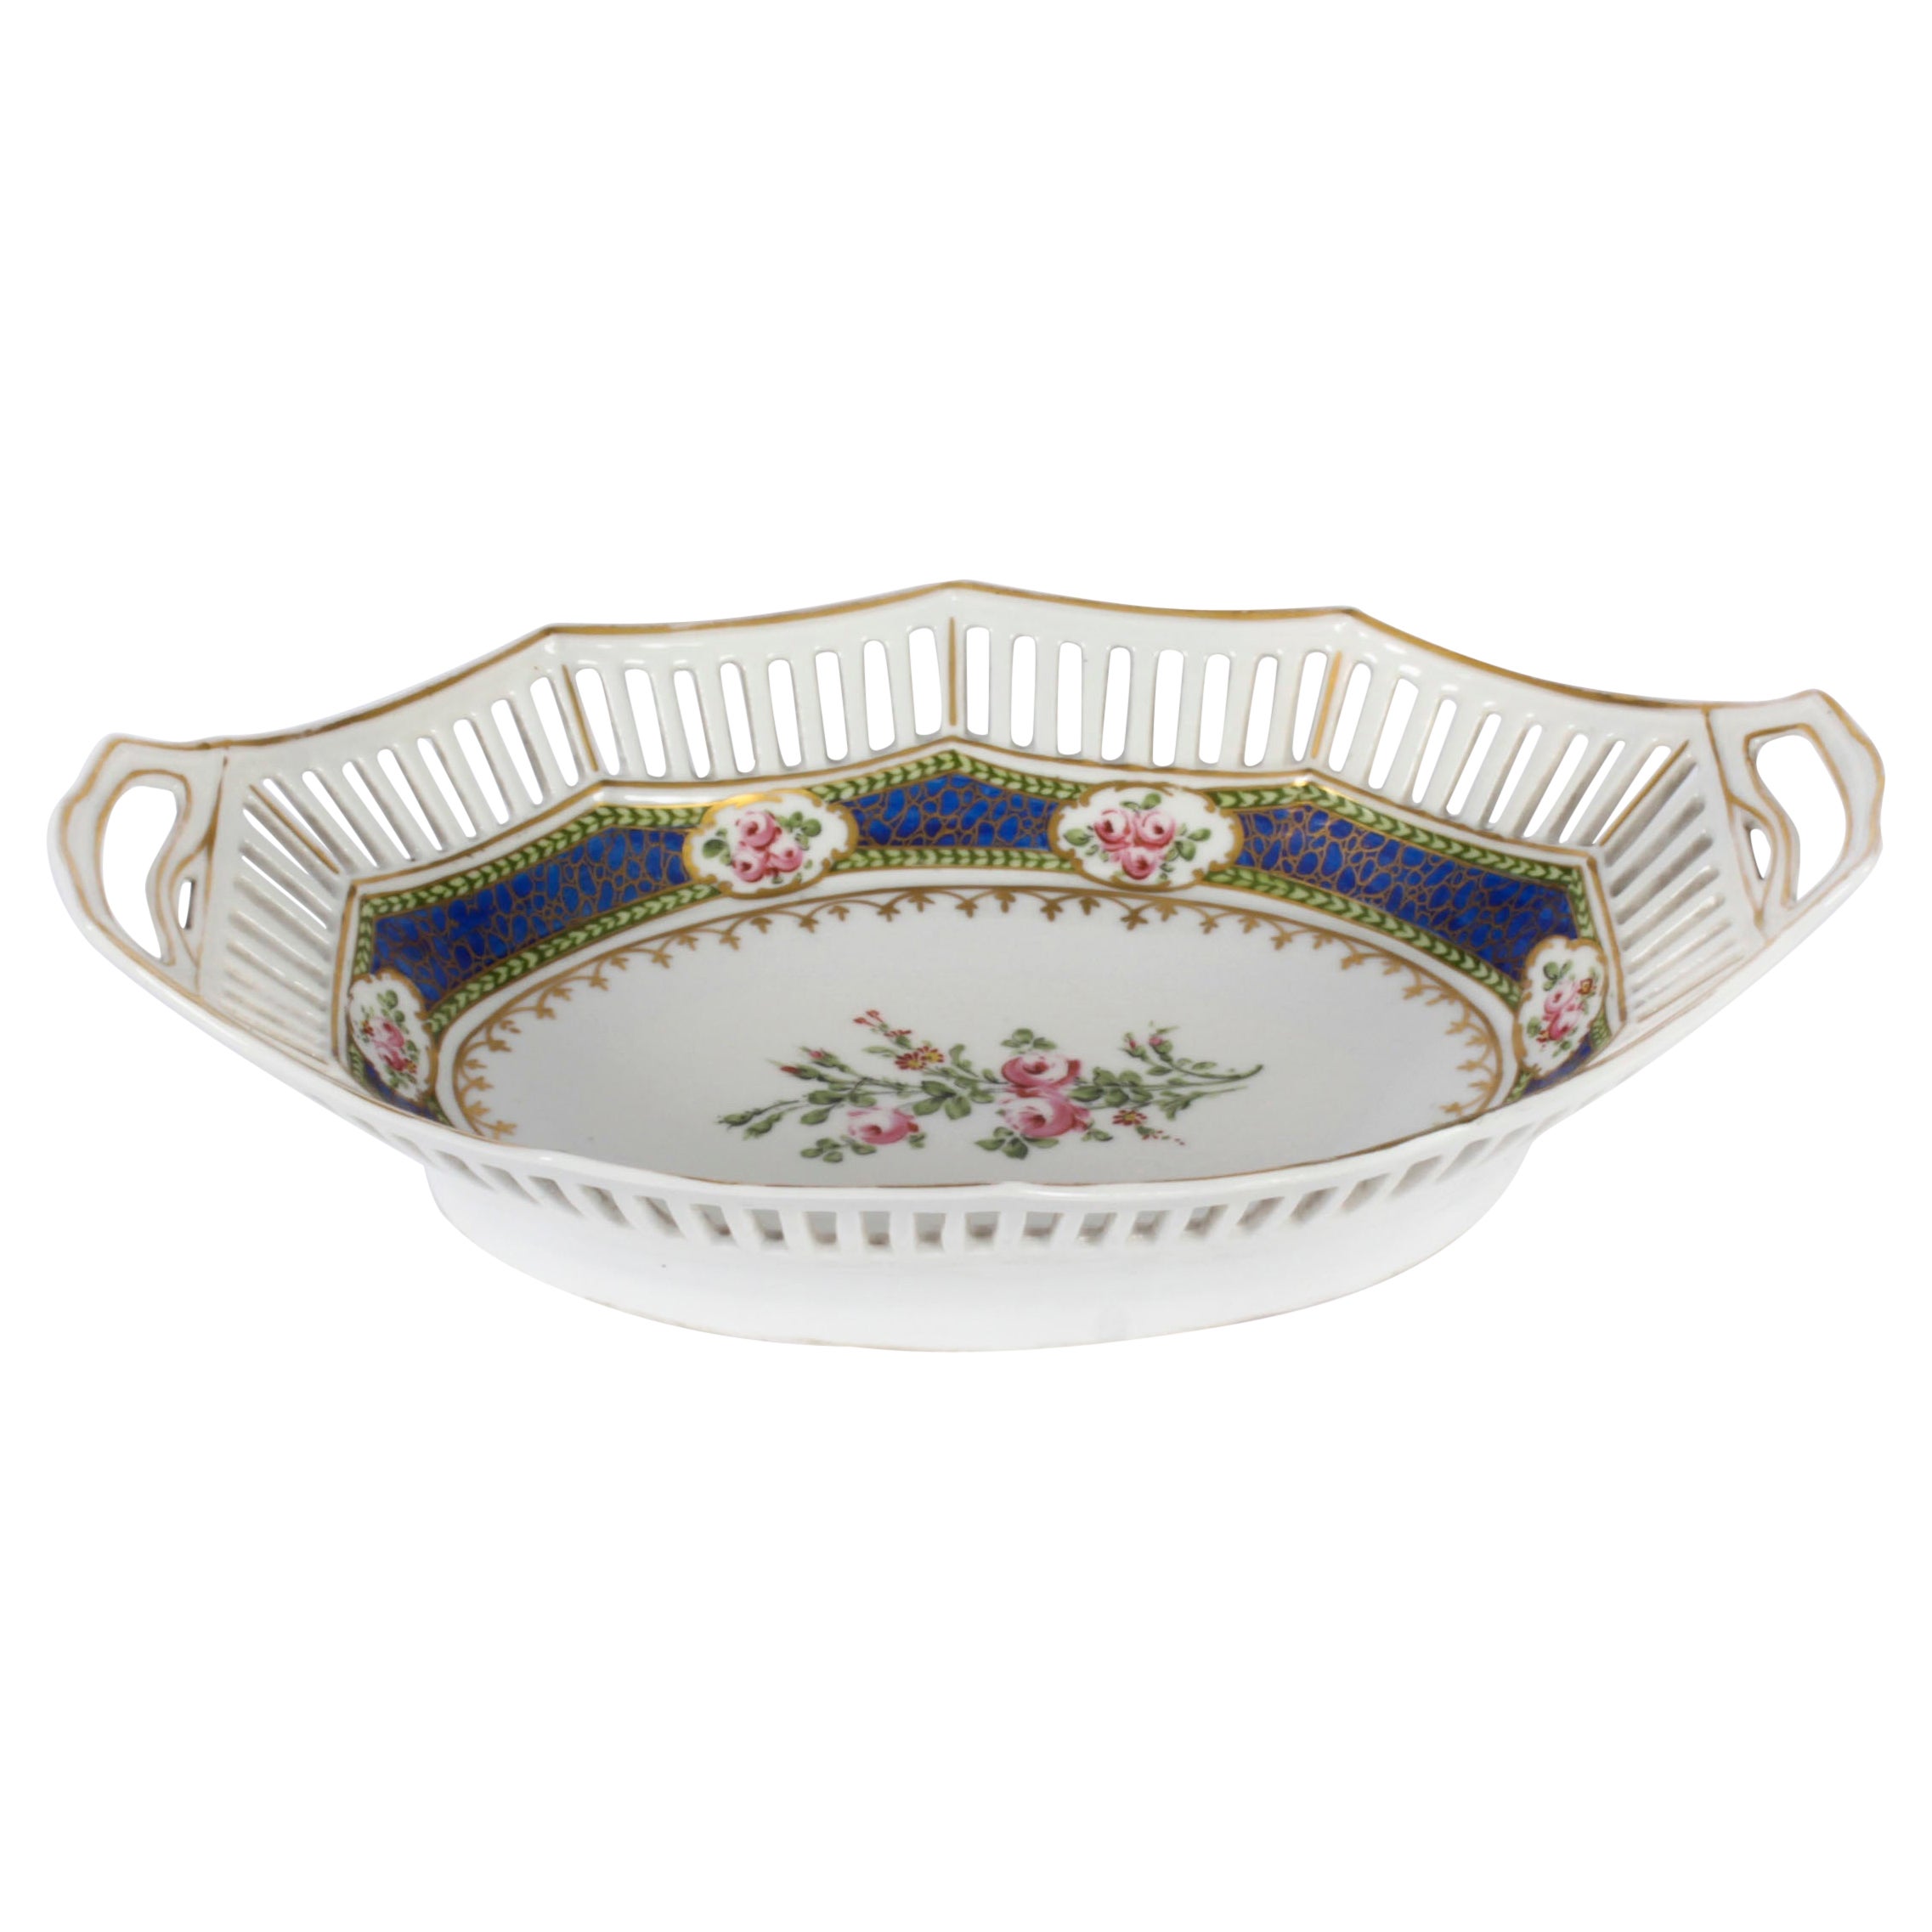 Ancien plat ovale en porcelaine de Sèvres fin 19ème siècle